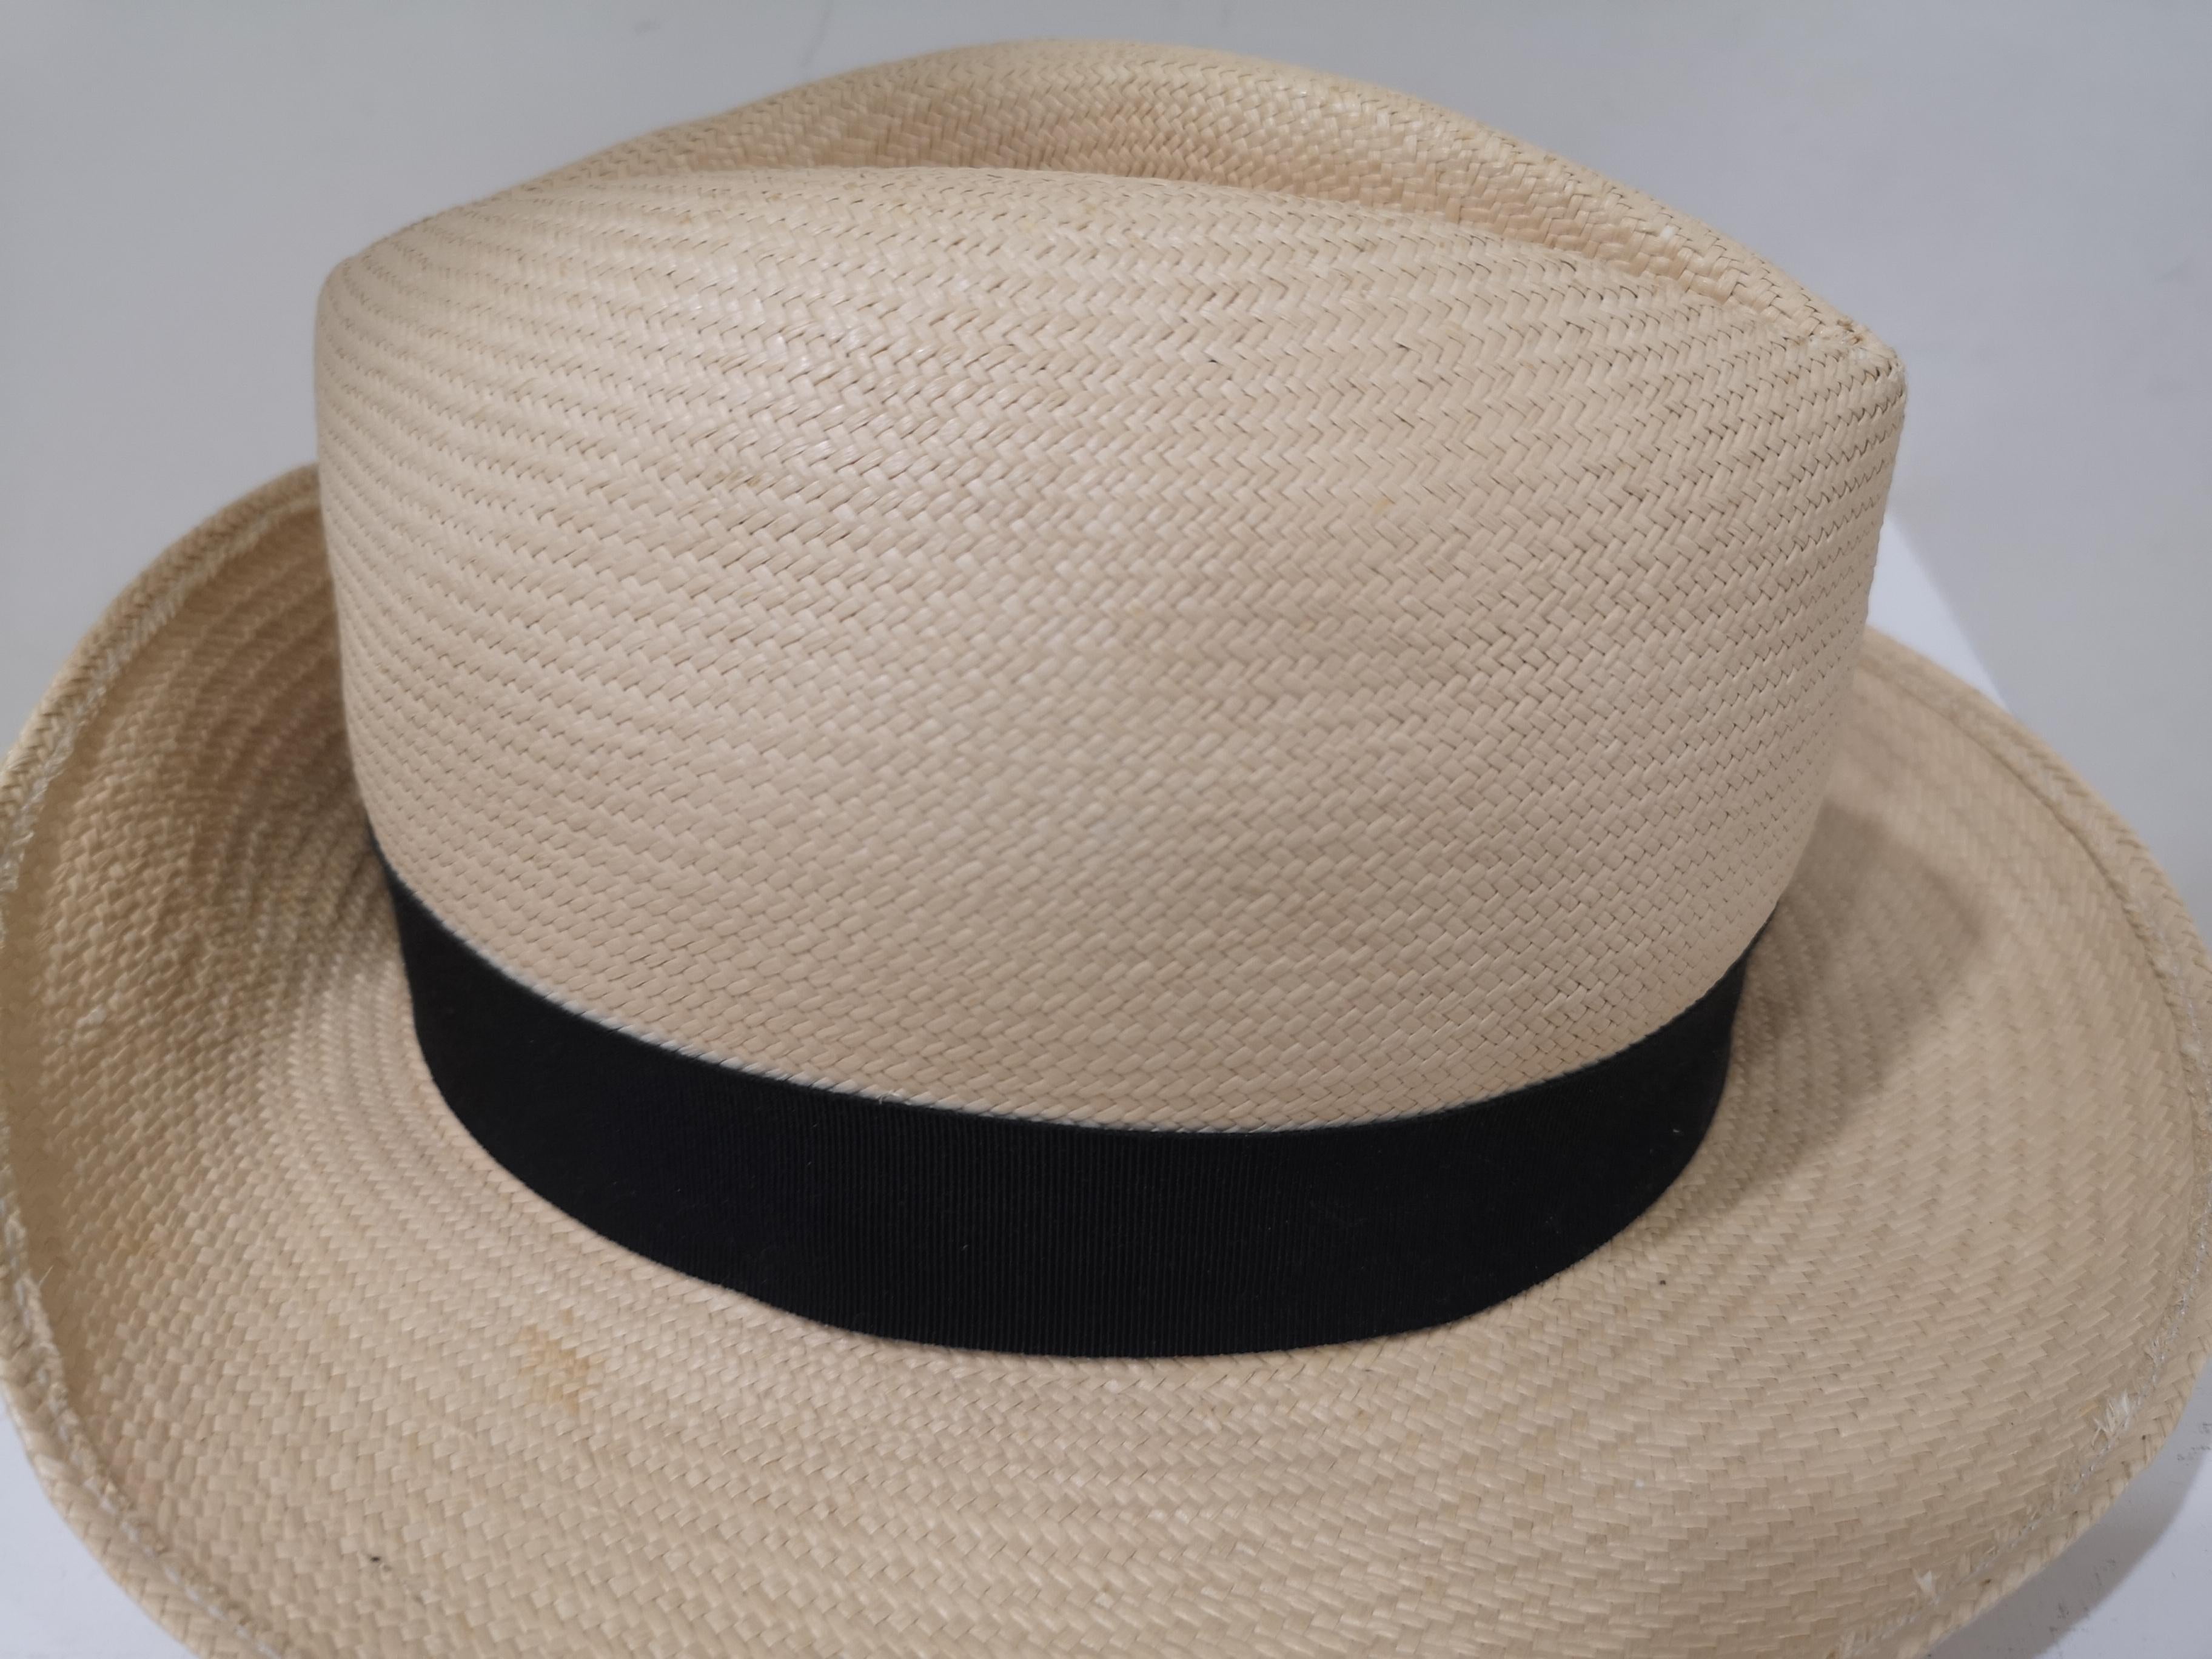 Borsalino Raffia Hat In Excellent Condition For Sale In Capri, IT